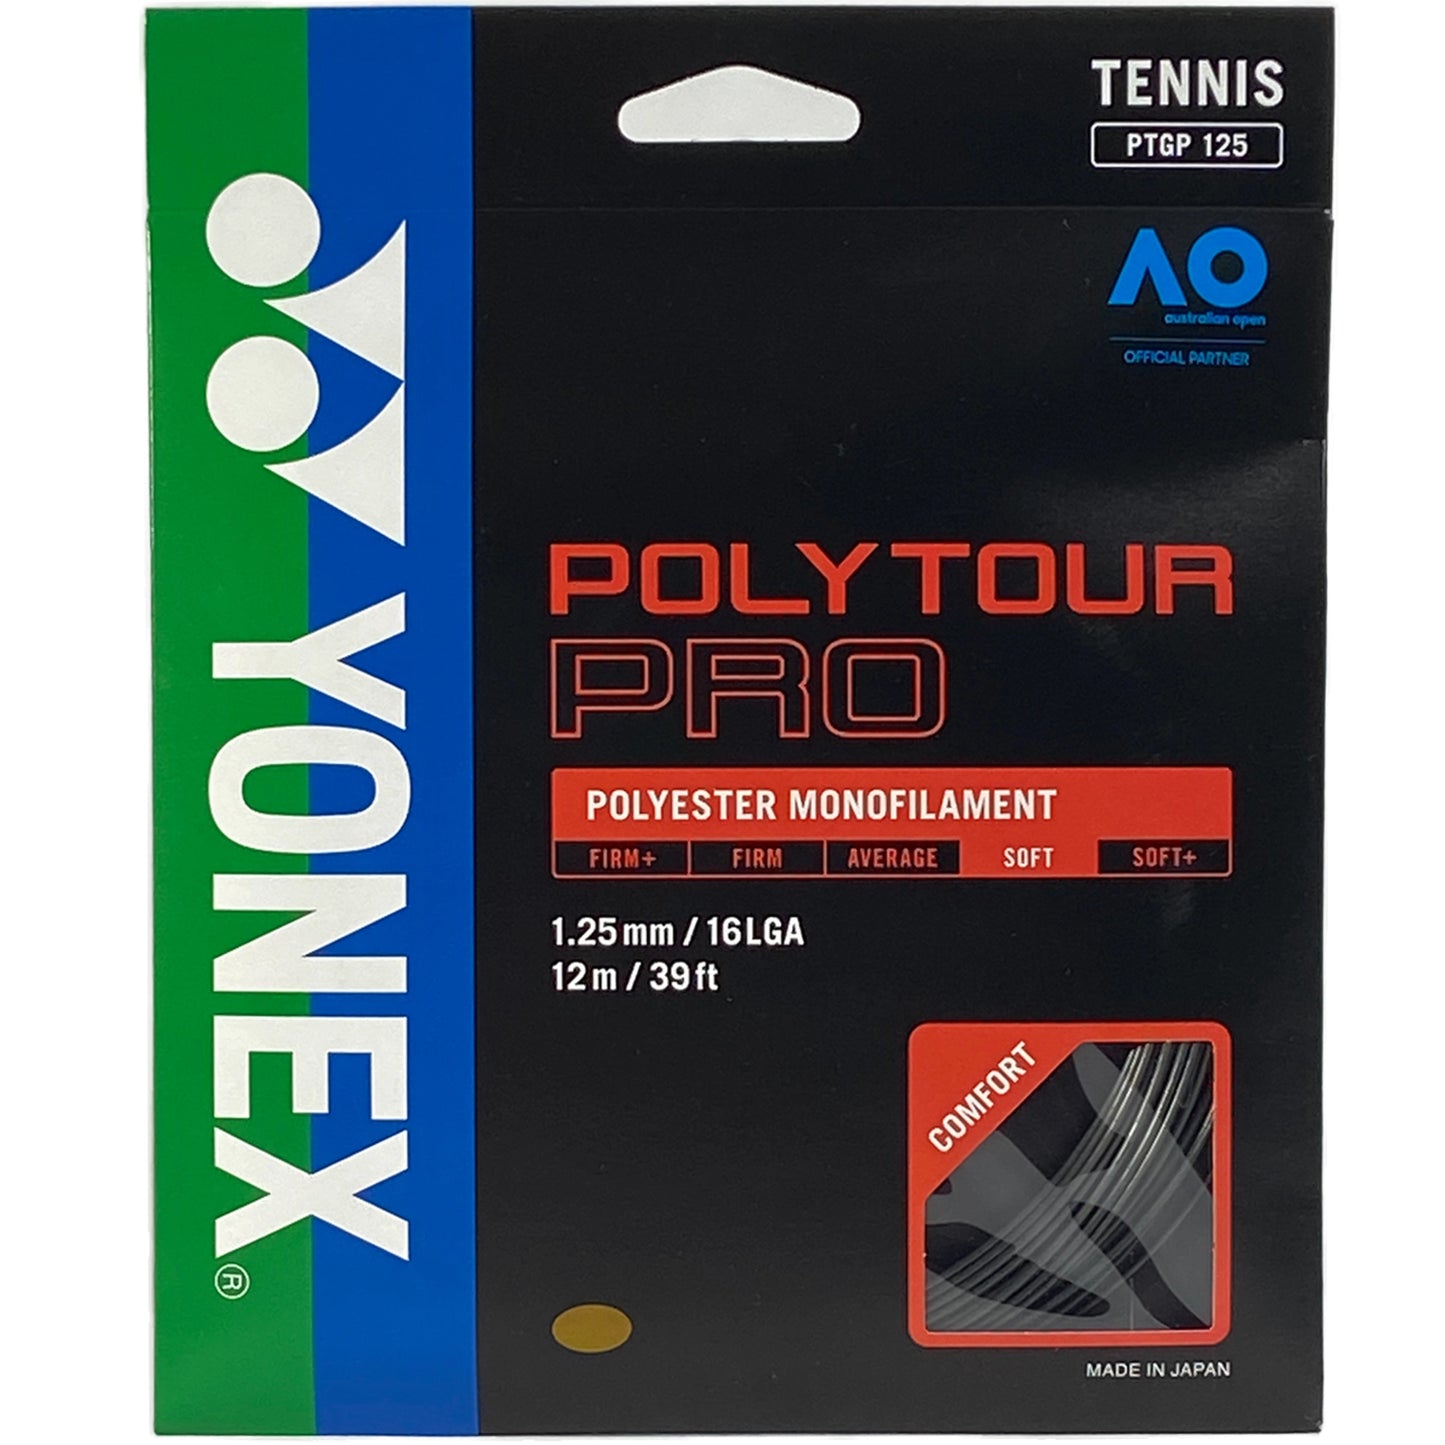 Yonex Polytour Pro 125 Graphite